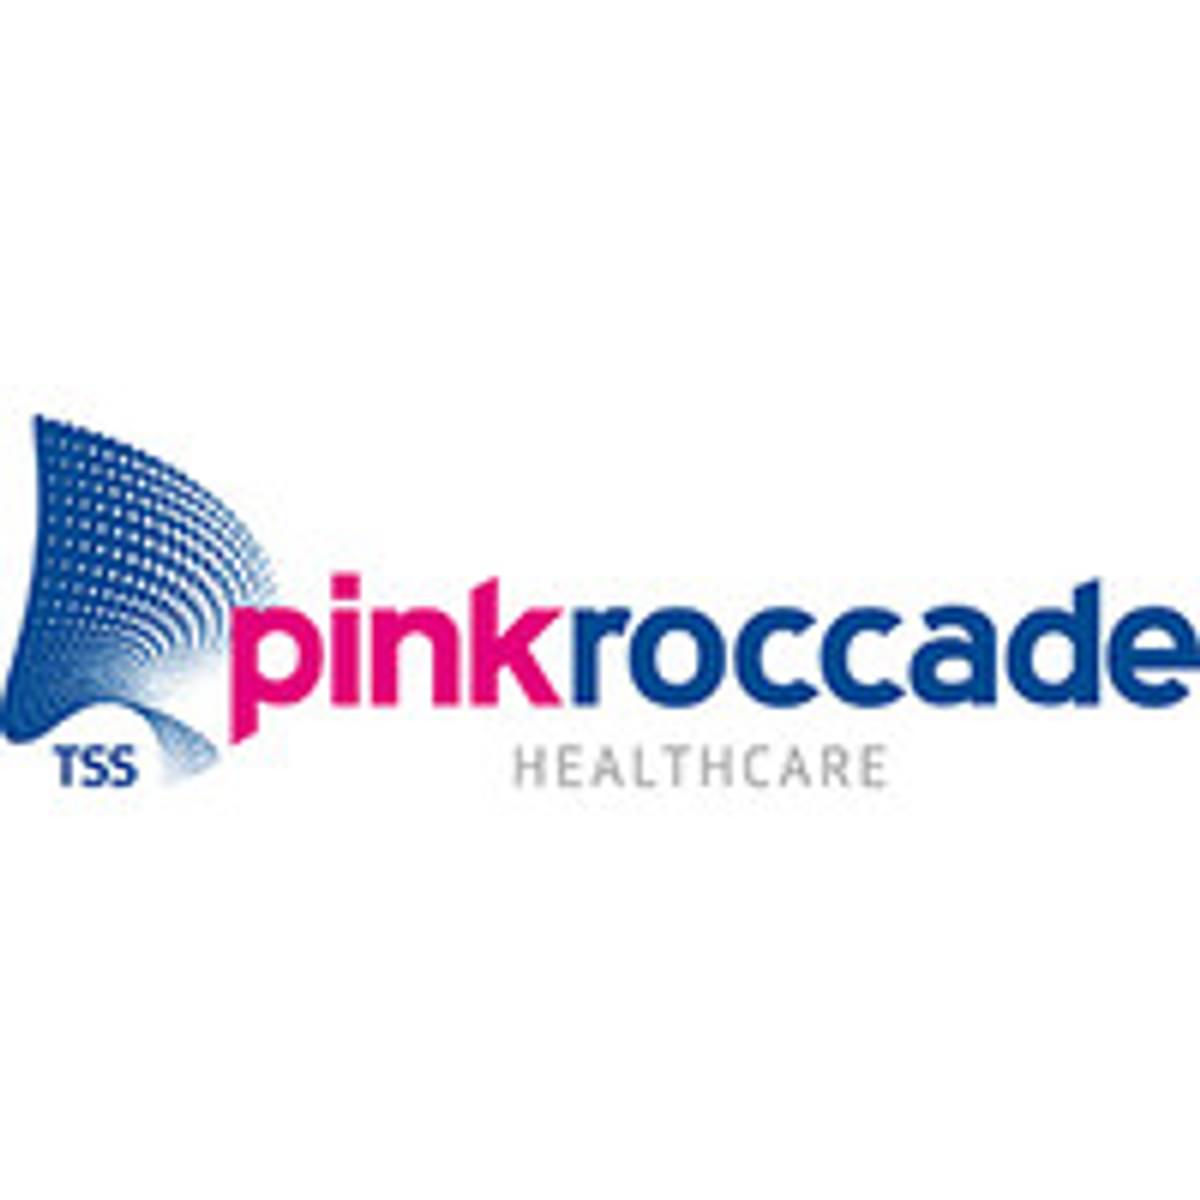 PinkRoccade Healthcare en LUMC sluiten meerjarig beheercontract image